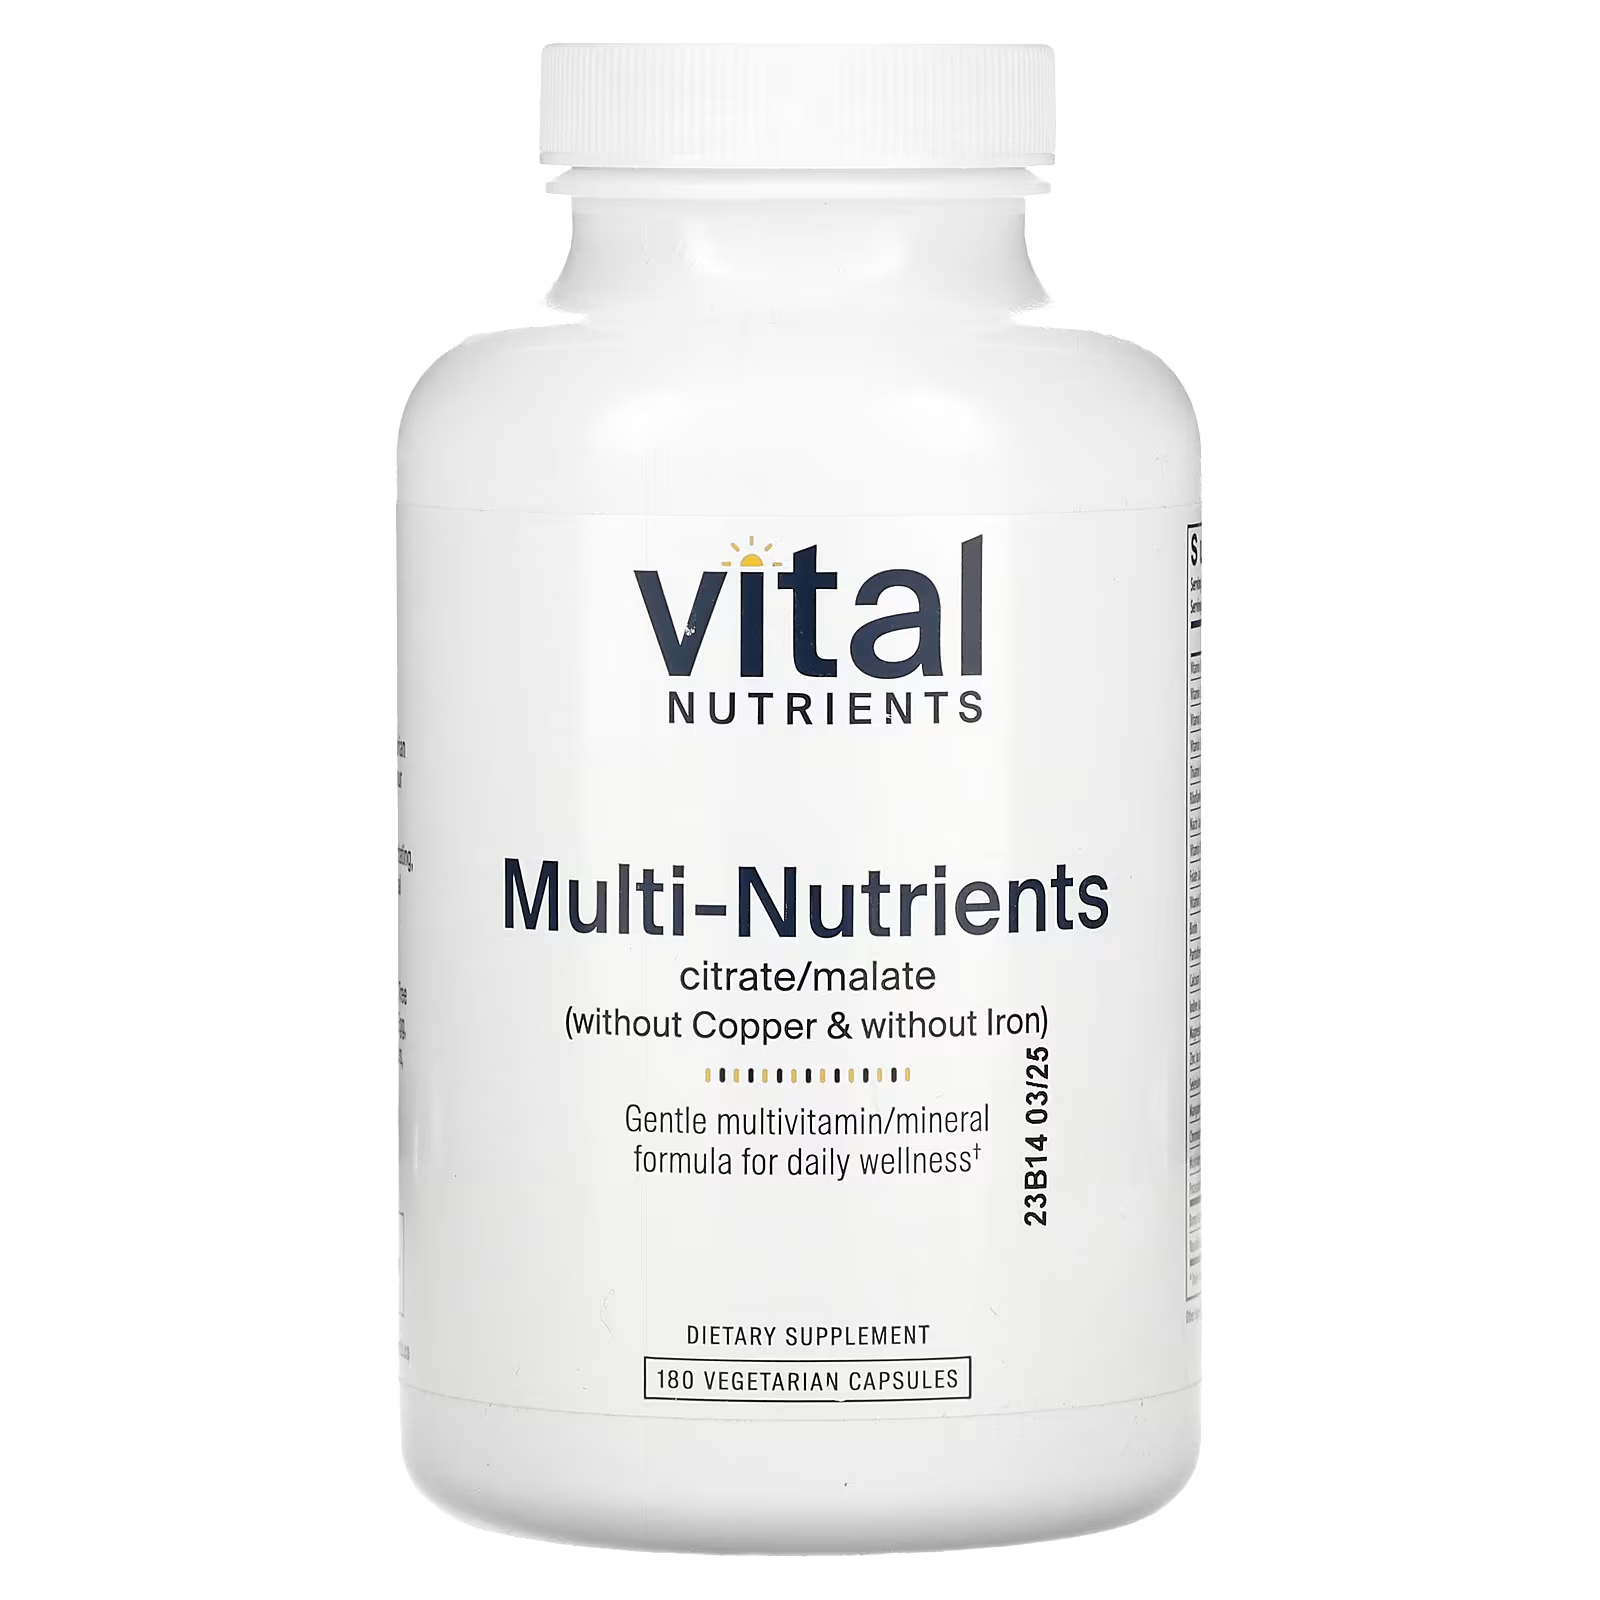 Мультивитамины без меди и железа Vital Nutrients Multi-Nutrients Citrate/Malate, 180 капсул витамины антиоксиданты минералы awochactive мультивитамины